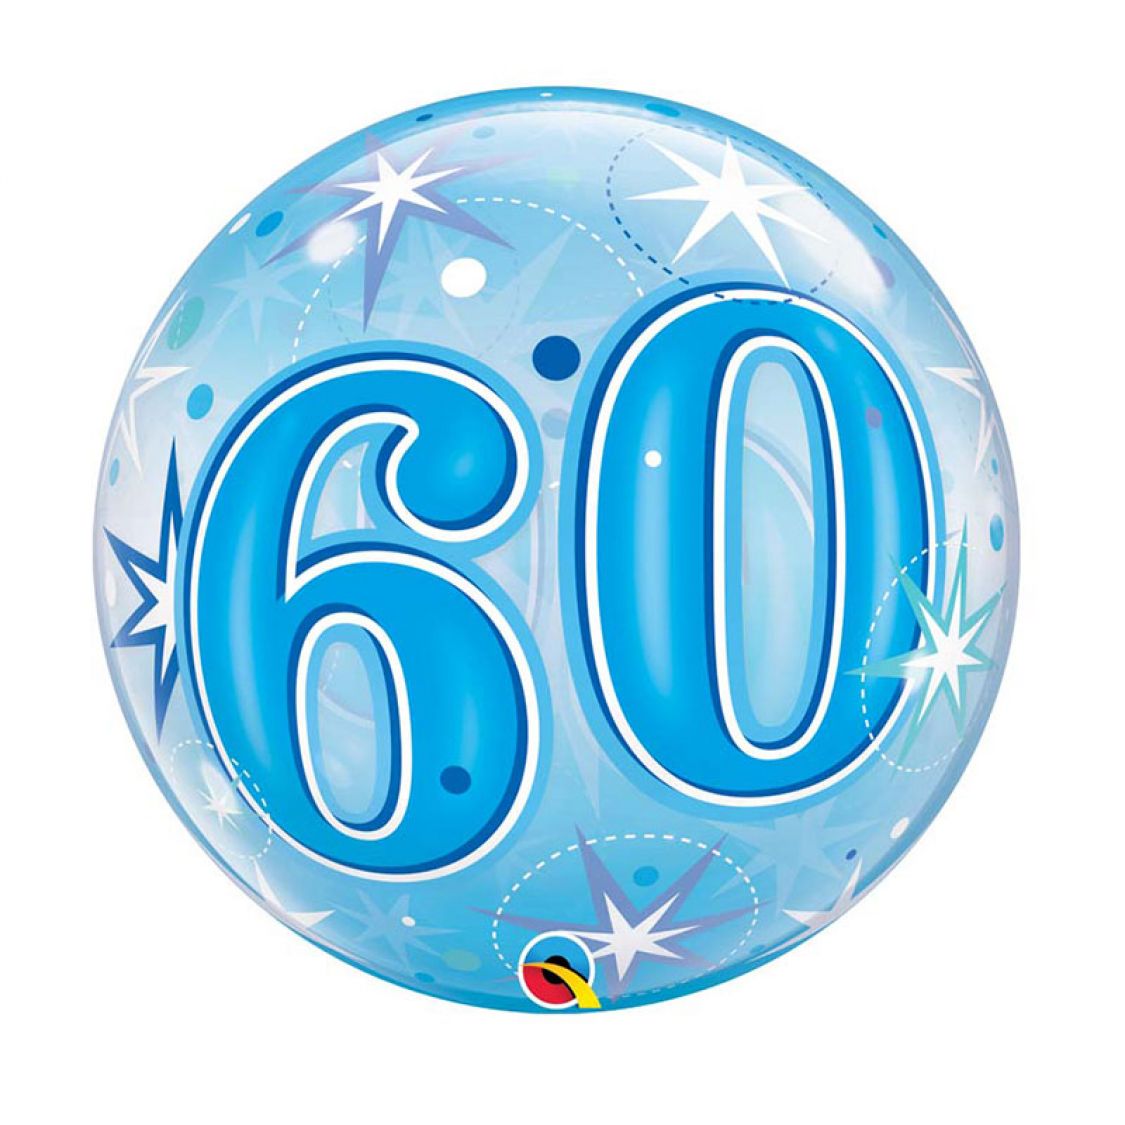 Ballon Bubble chiffre 60 Star Bleu